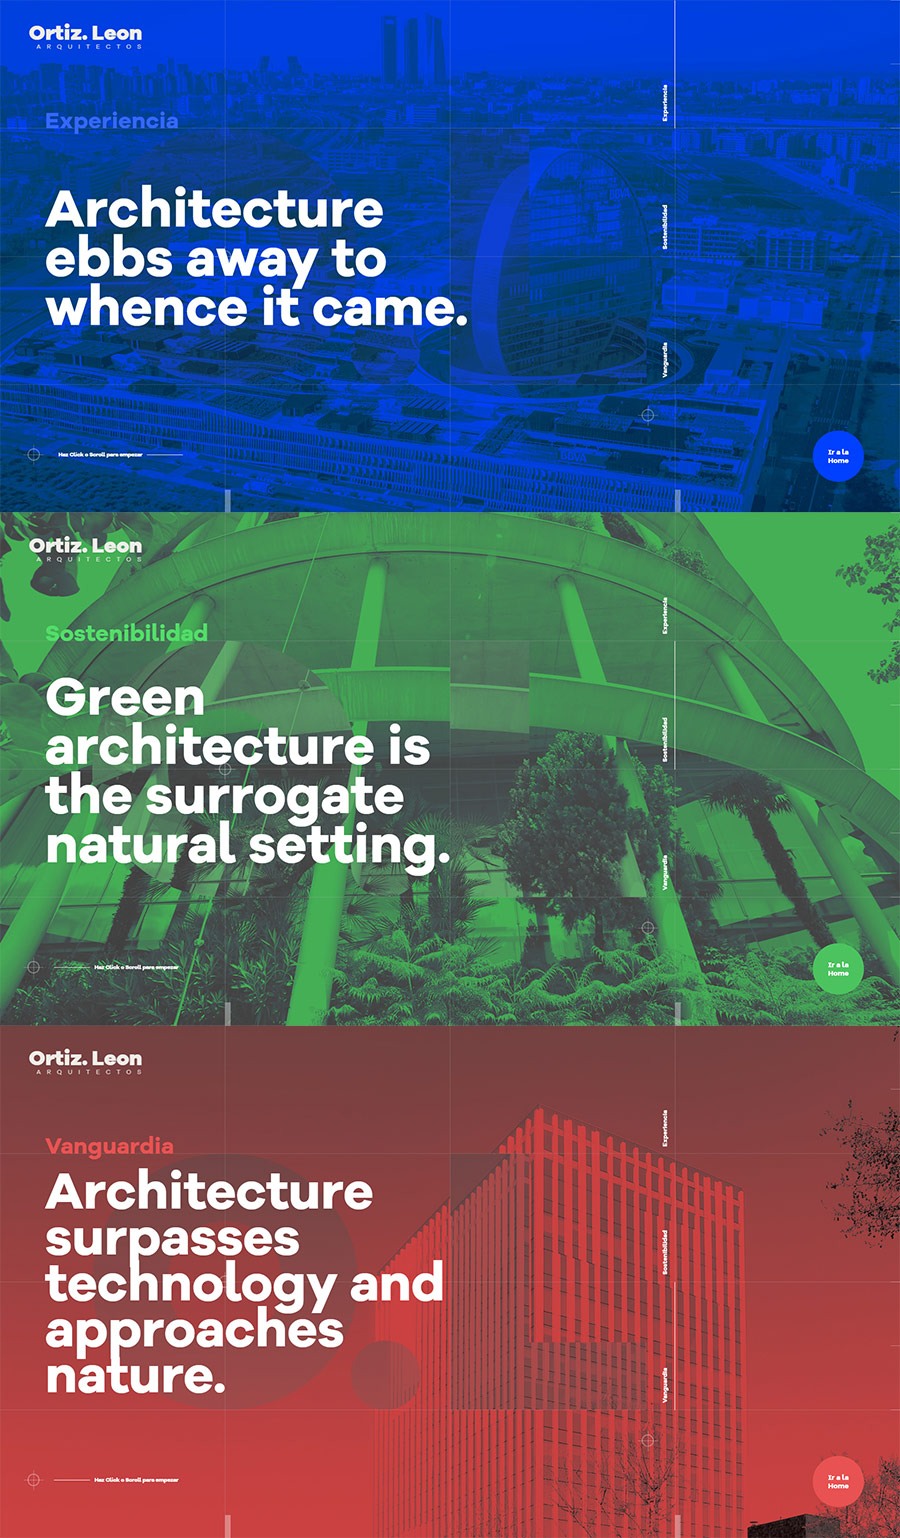 Ortiz Leon arquitectos  |  Inspiración. Webs que utilizan imágenes con efecto duotono